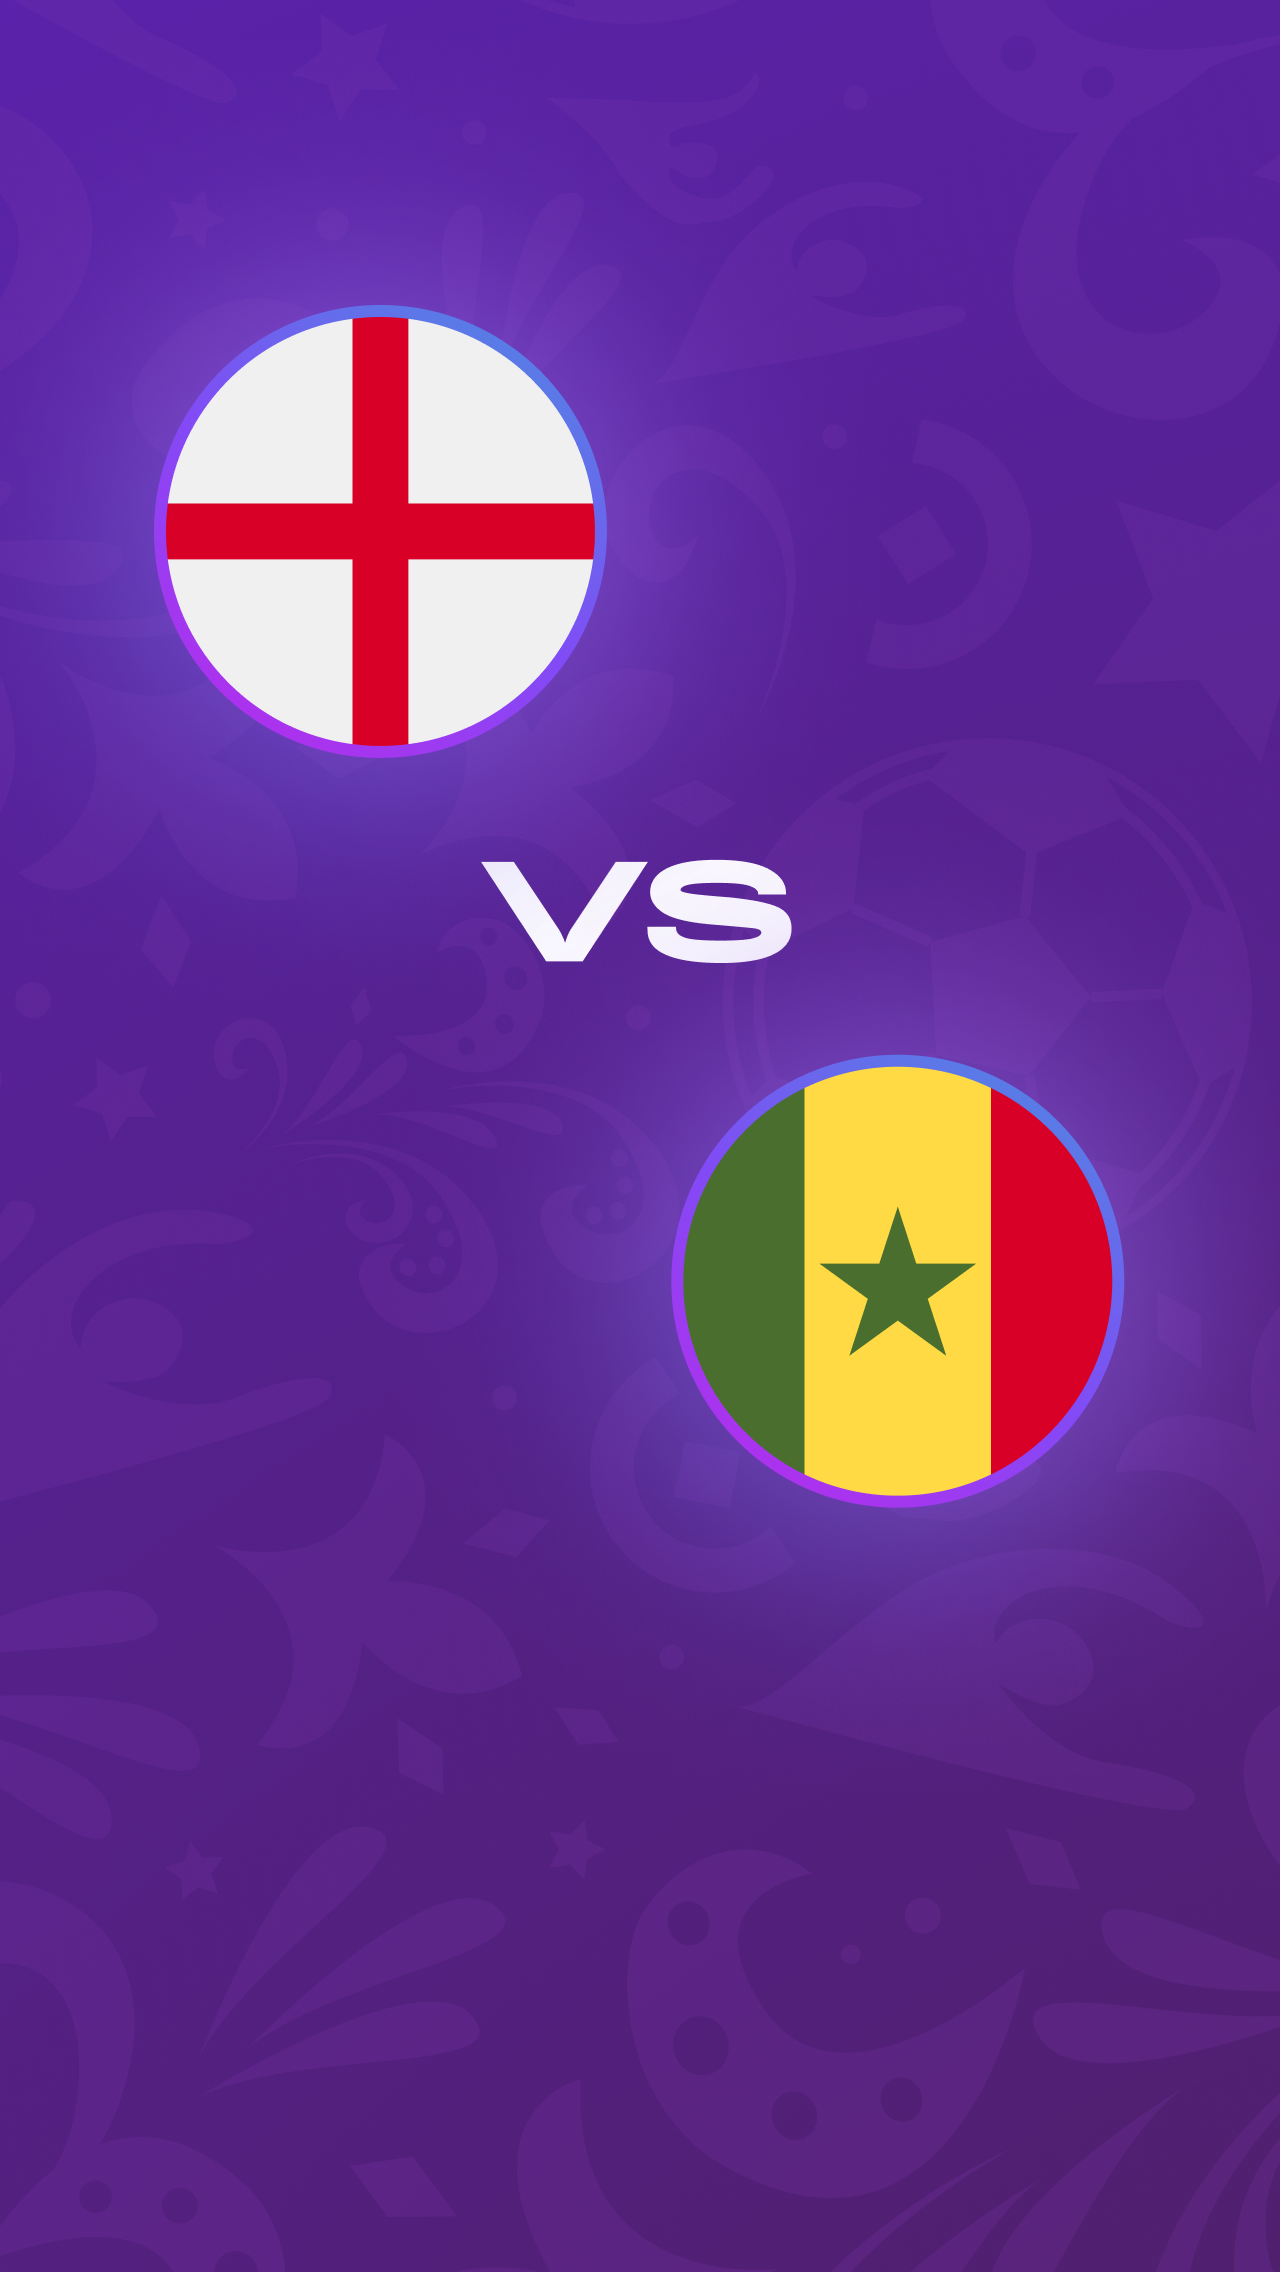 1/8 финала, 4 декабря, 22:00: Англия против Сенегала<br/>
